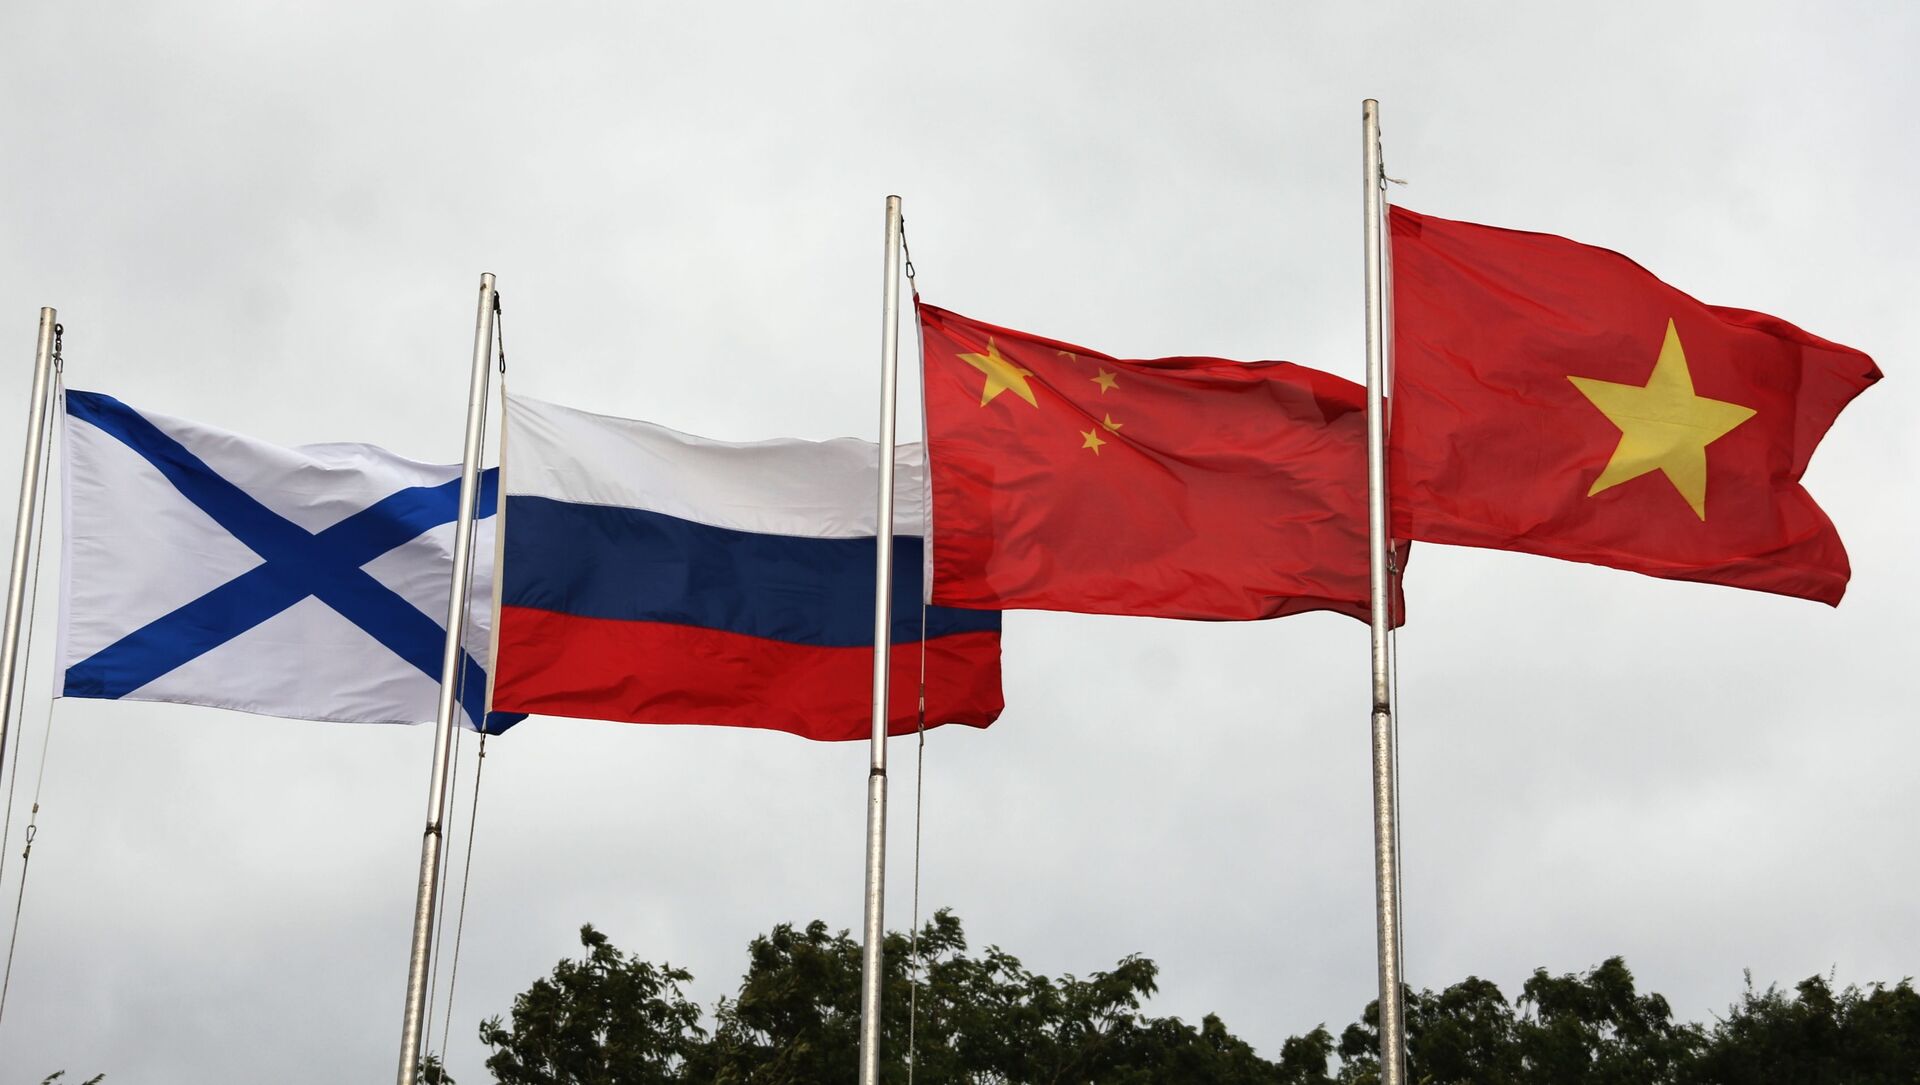 Lá cờ Andreevsky và các quốc kỳ Nga, Trung Quốc và Việt Nam (từ trái sang phải) trong lễ khai mạc Hội thao quân sự quốc tế Army Games 2021 tại Vladivostok - Sputnik Việt Nam, 1920, 30.08.2021